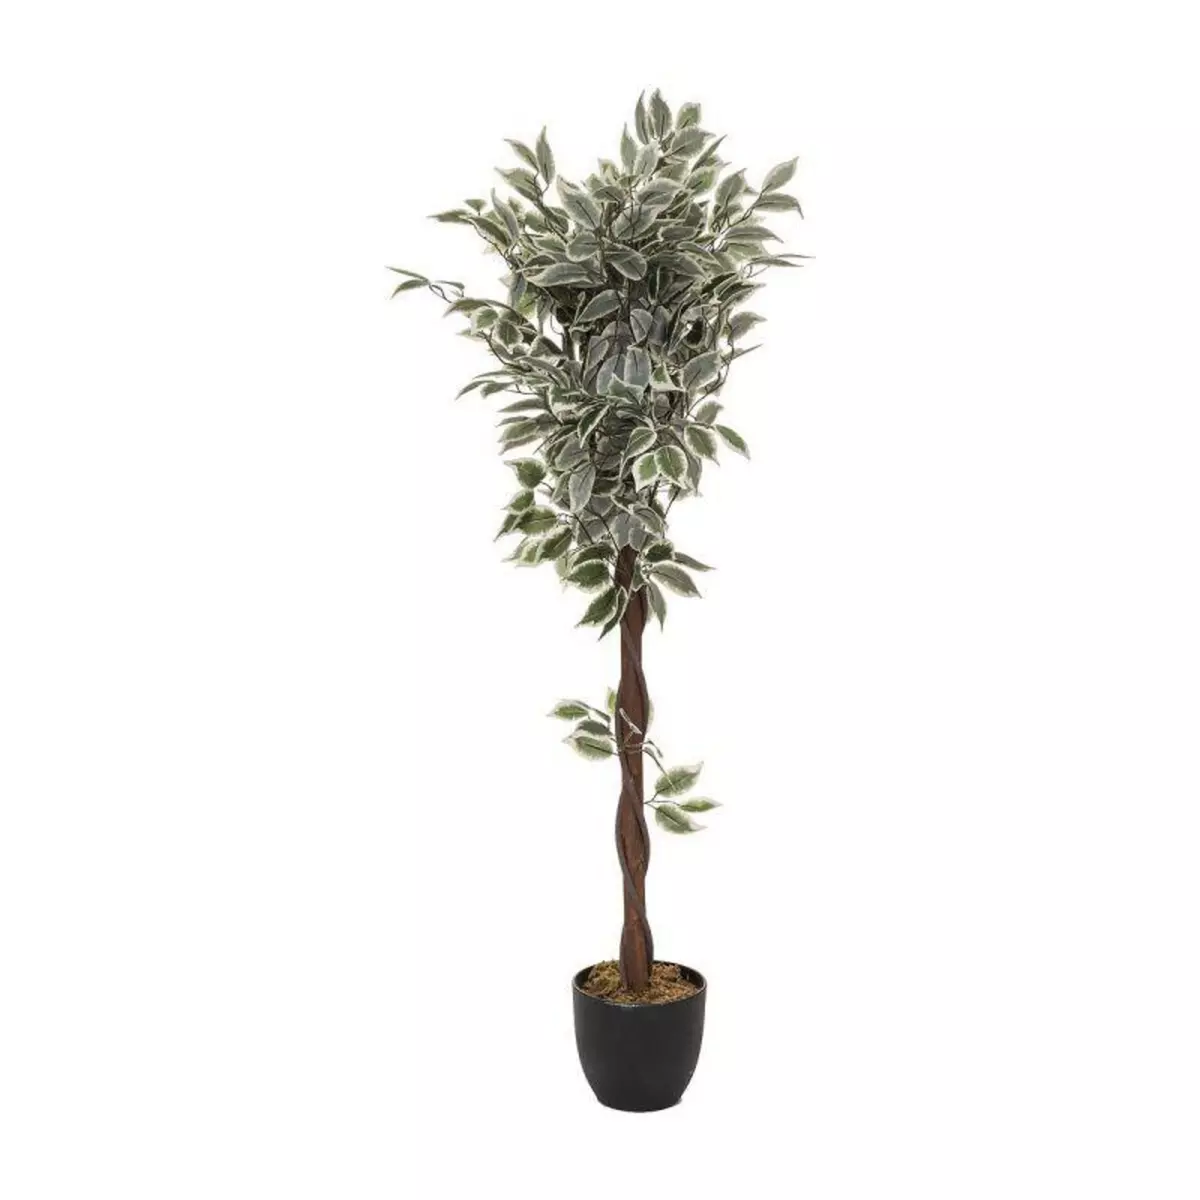  Plante Artificielle en Pot  Ficus  120cm Vert & Noir